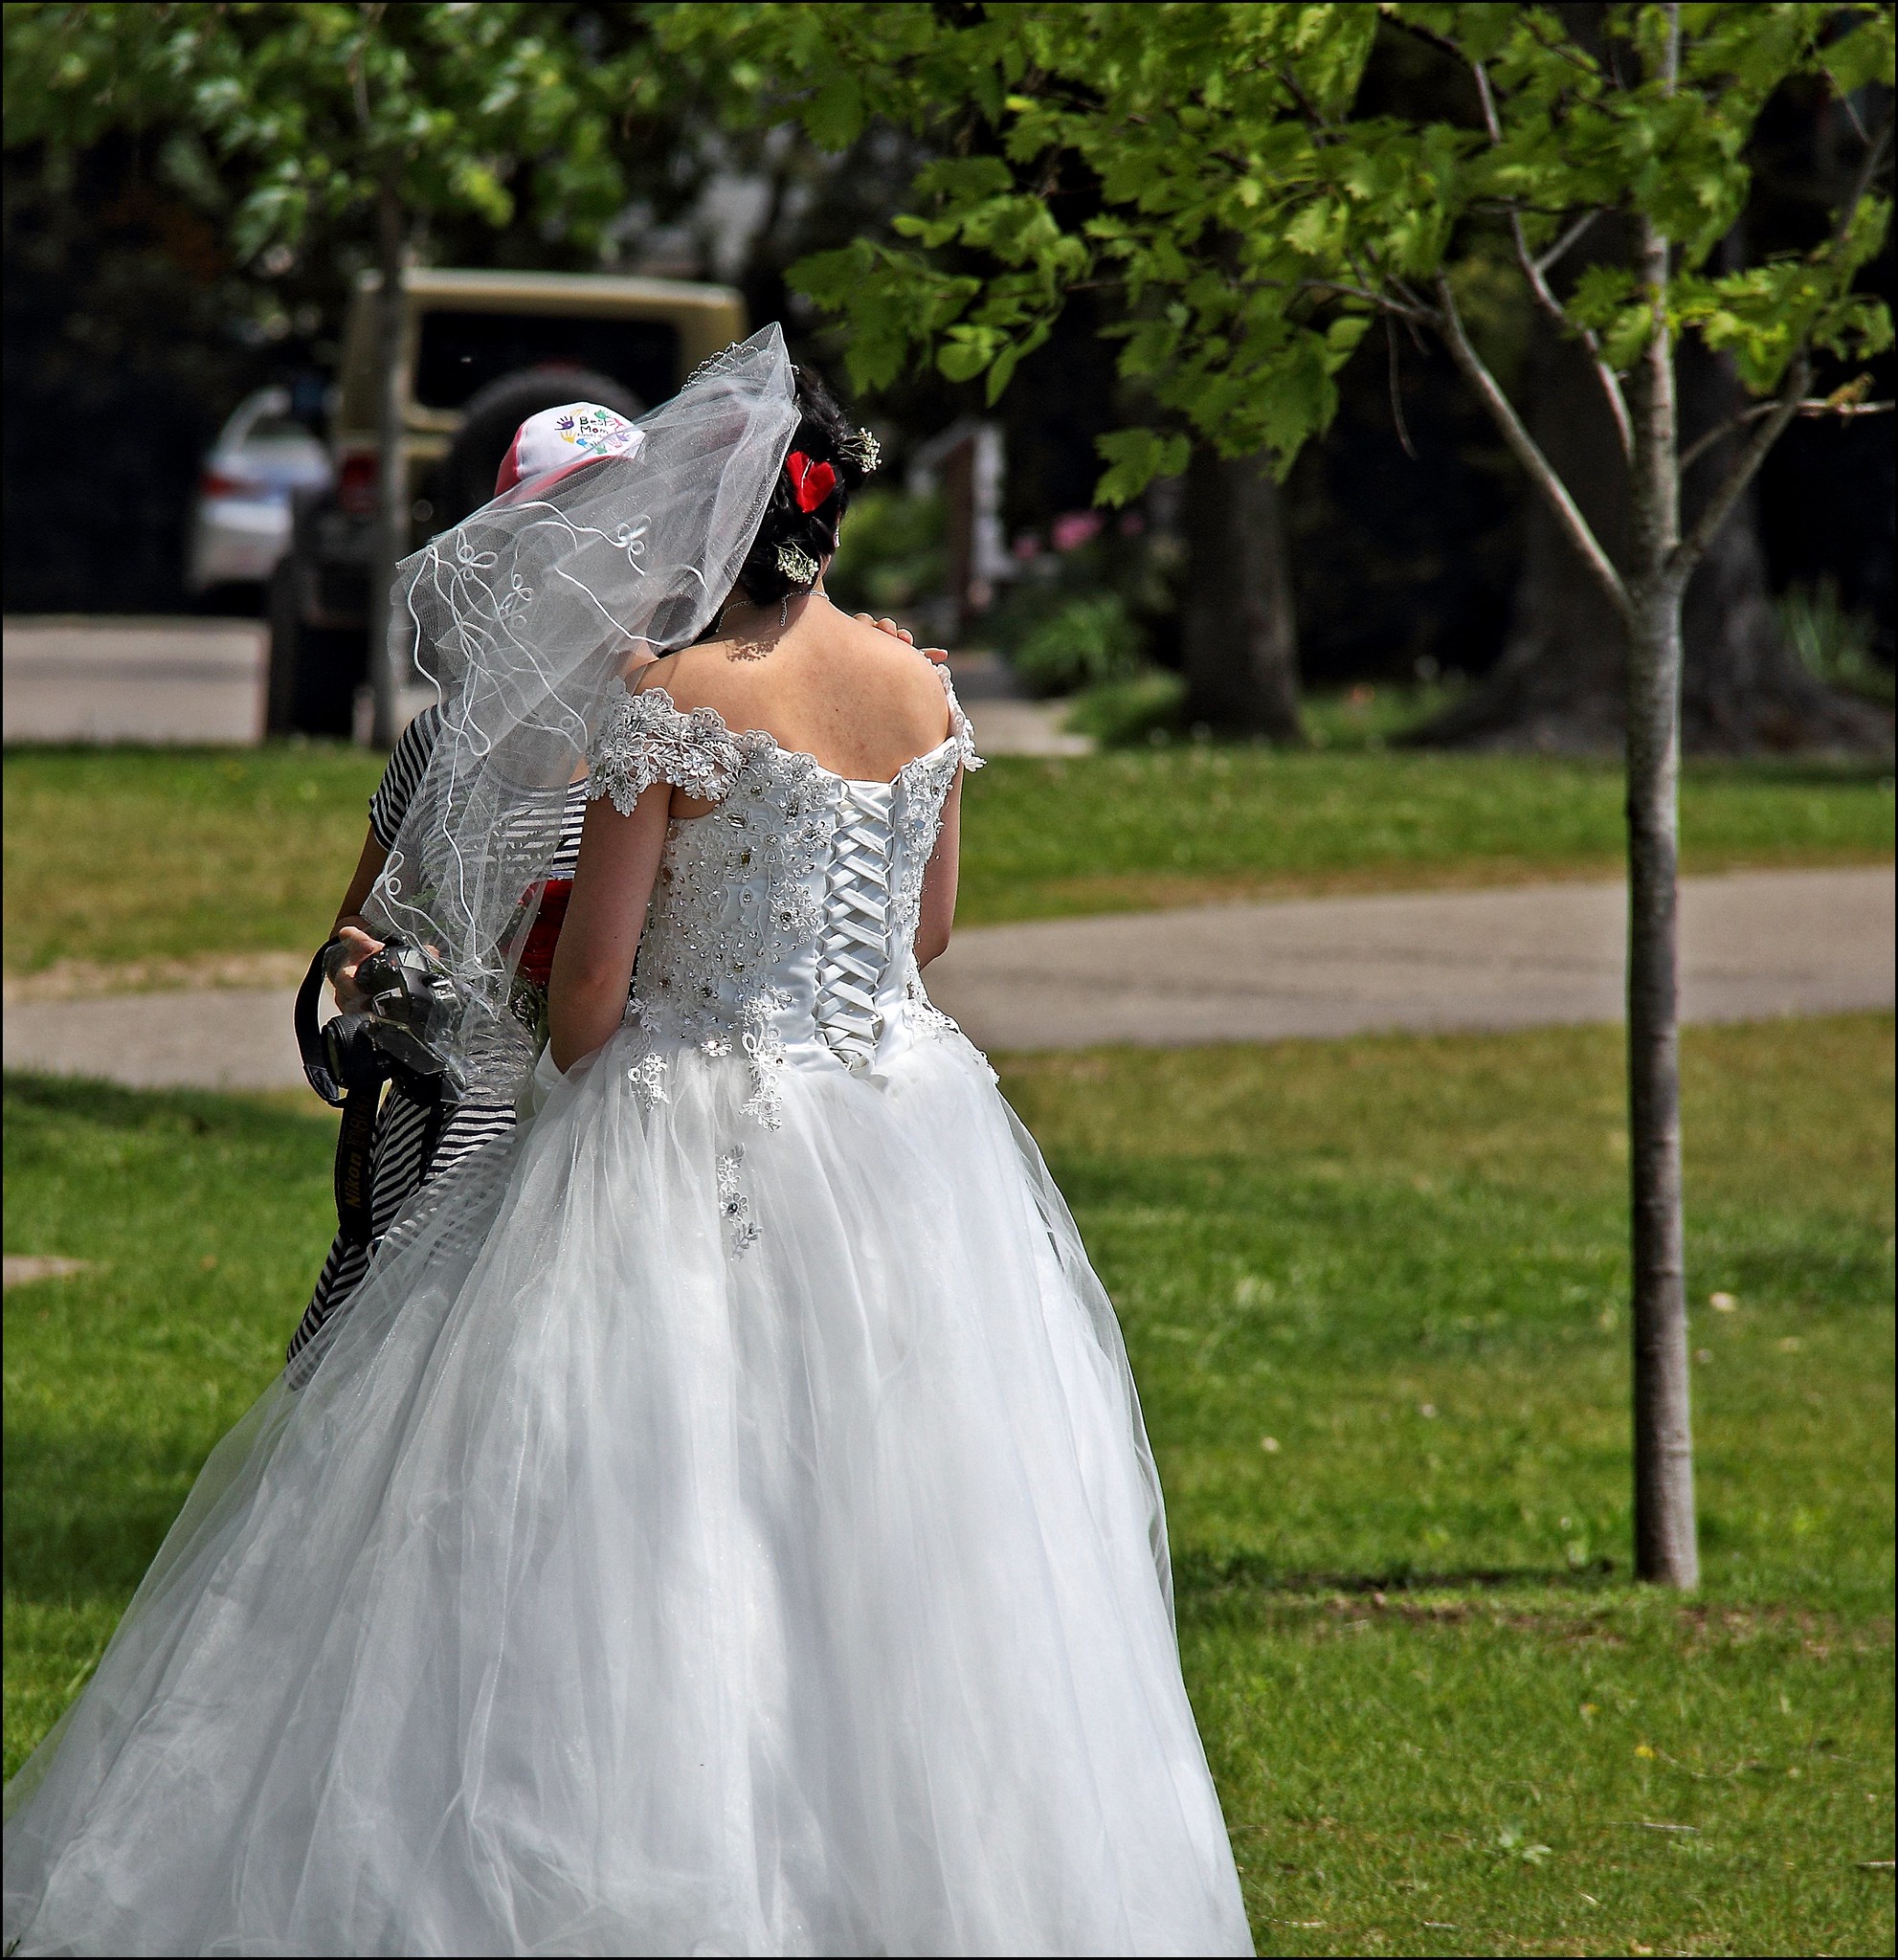 Die Rückenansicht einer im Freien stehenden Braut | Quelle: Flickr